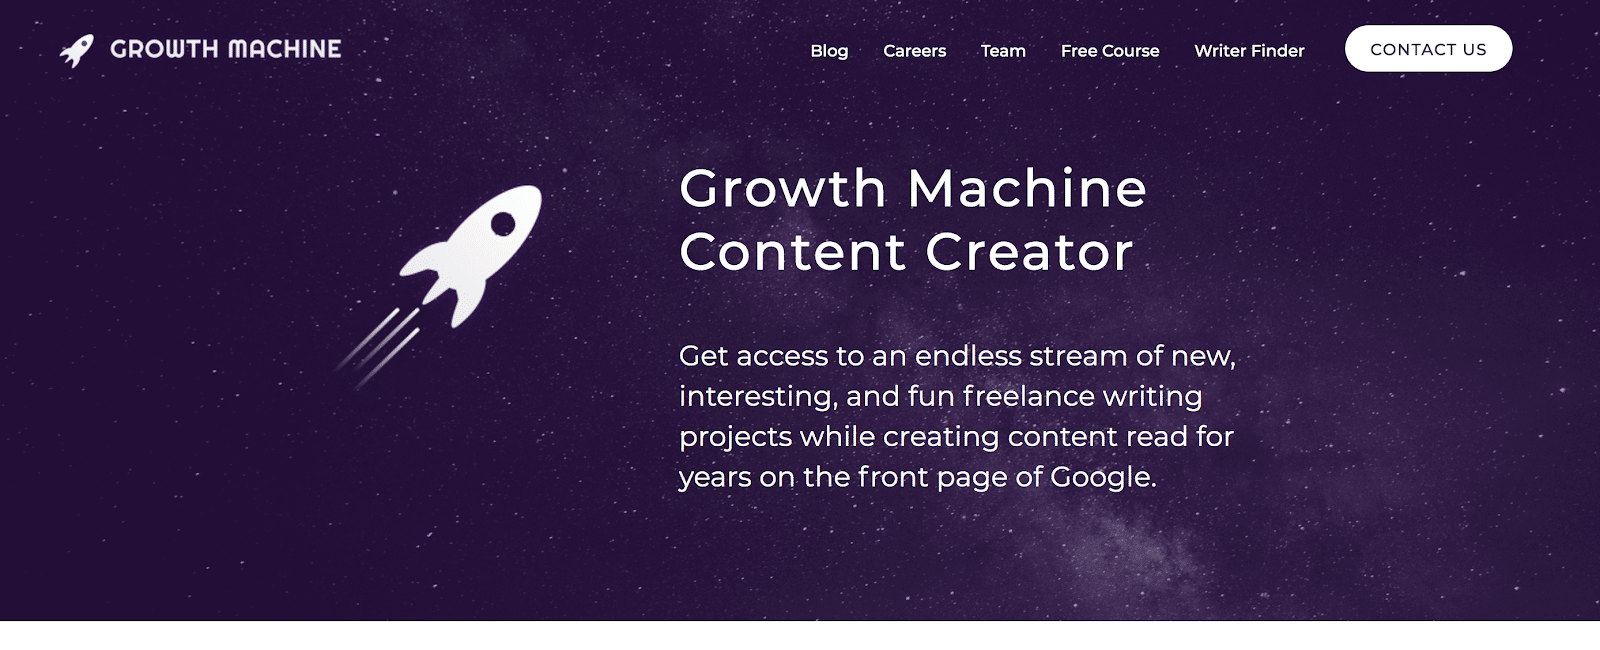 Listado de posiciones de creador de contenido de Growth Machine